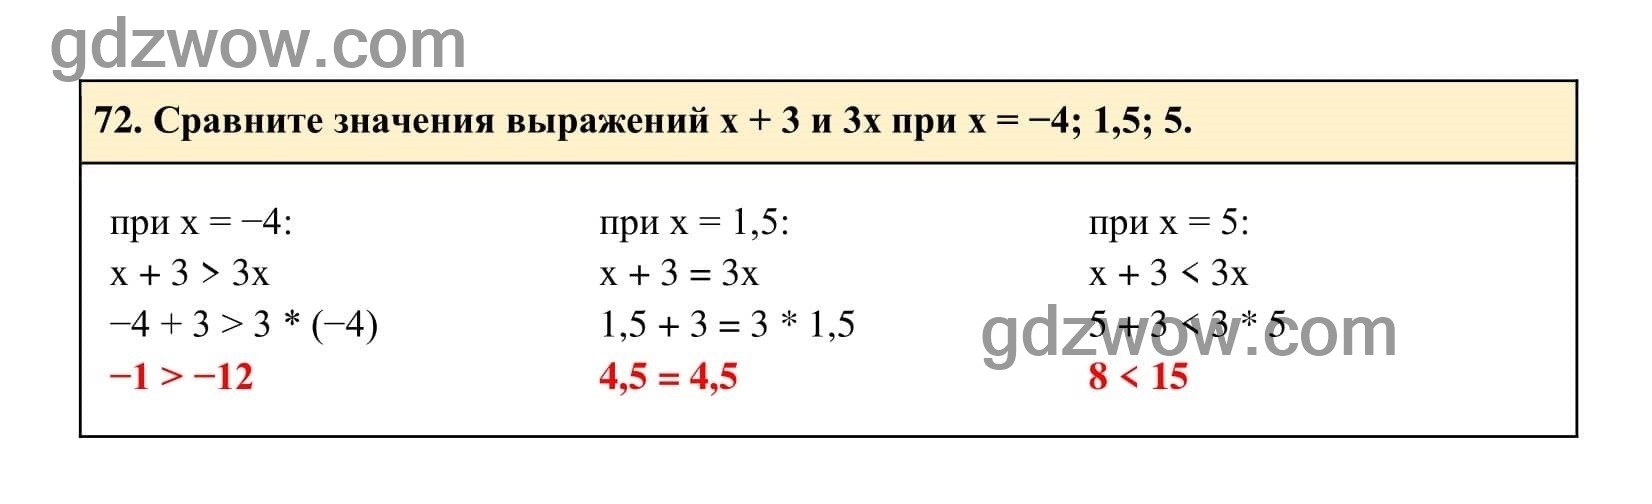 Упражнение 72 - ГДЗ по Алгебре 7 класс Учебник Макарычев (решебник) - GDZwow